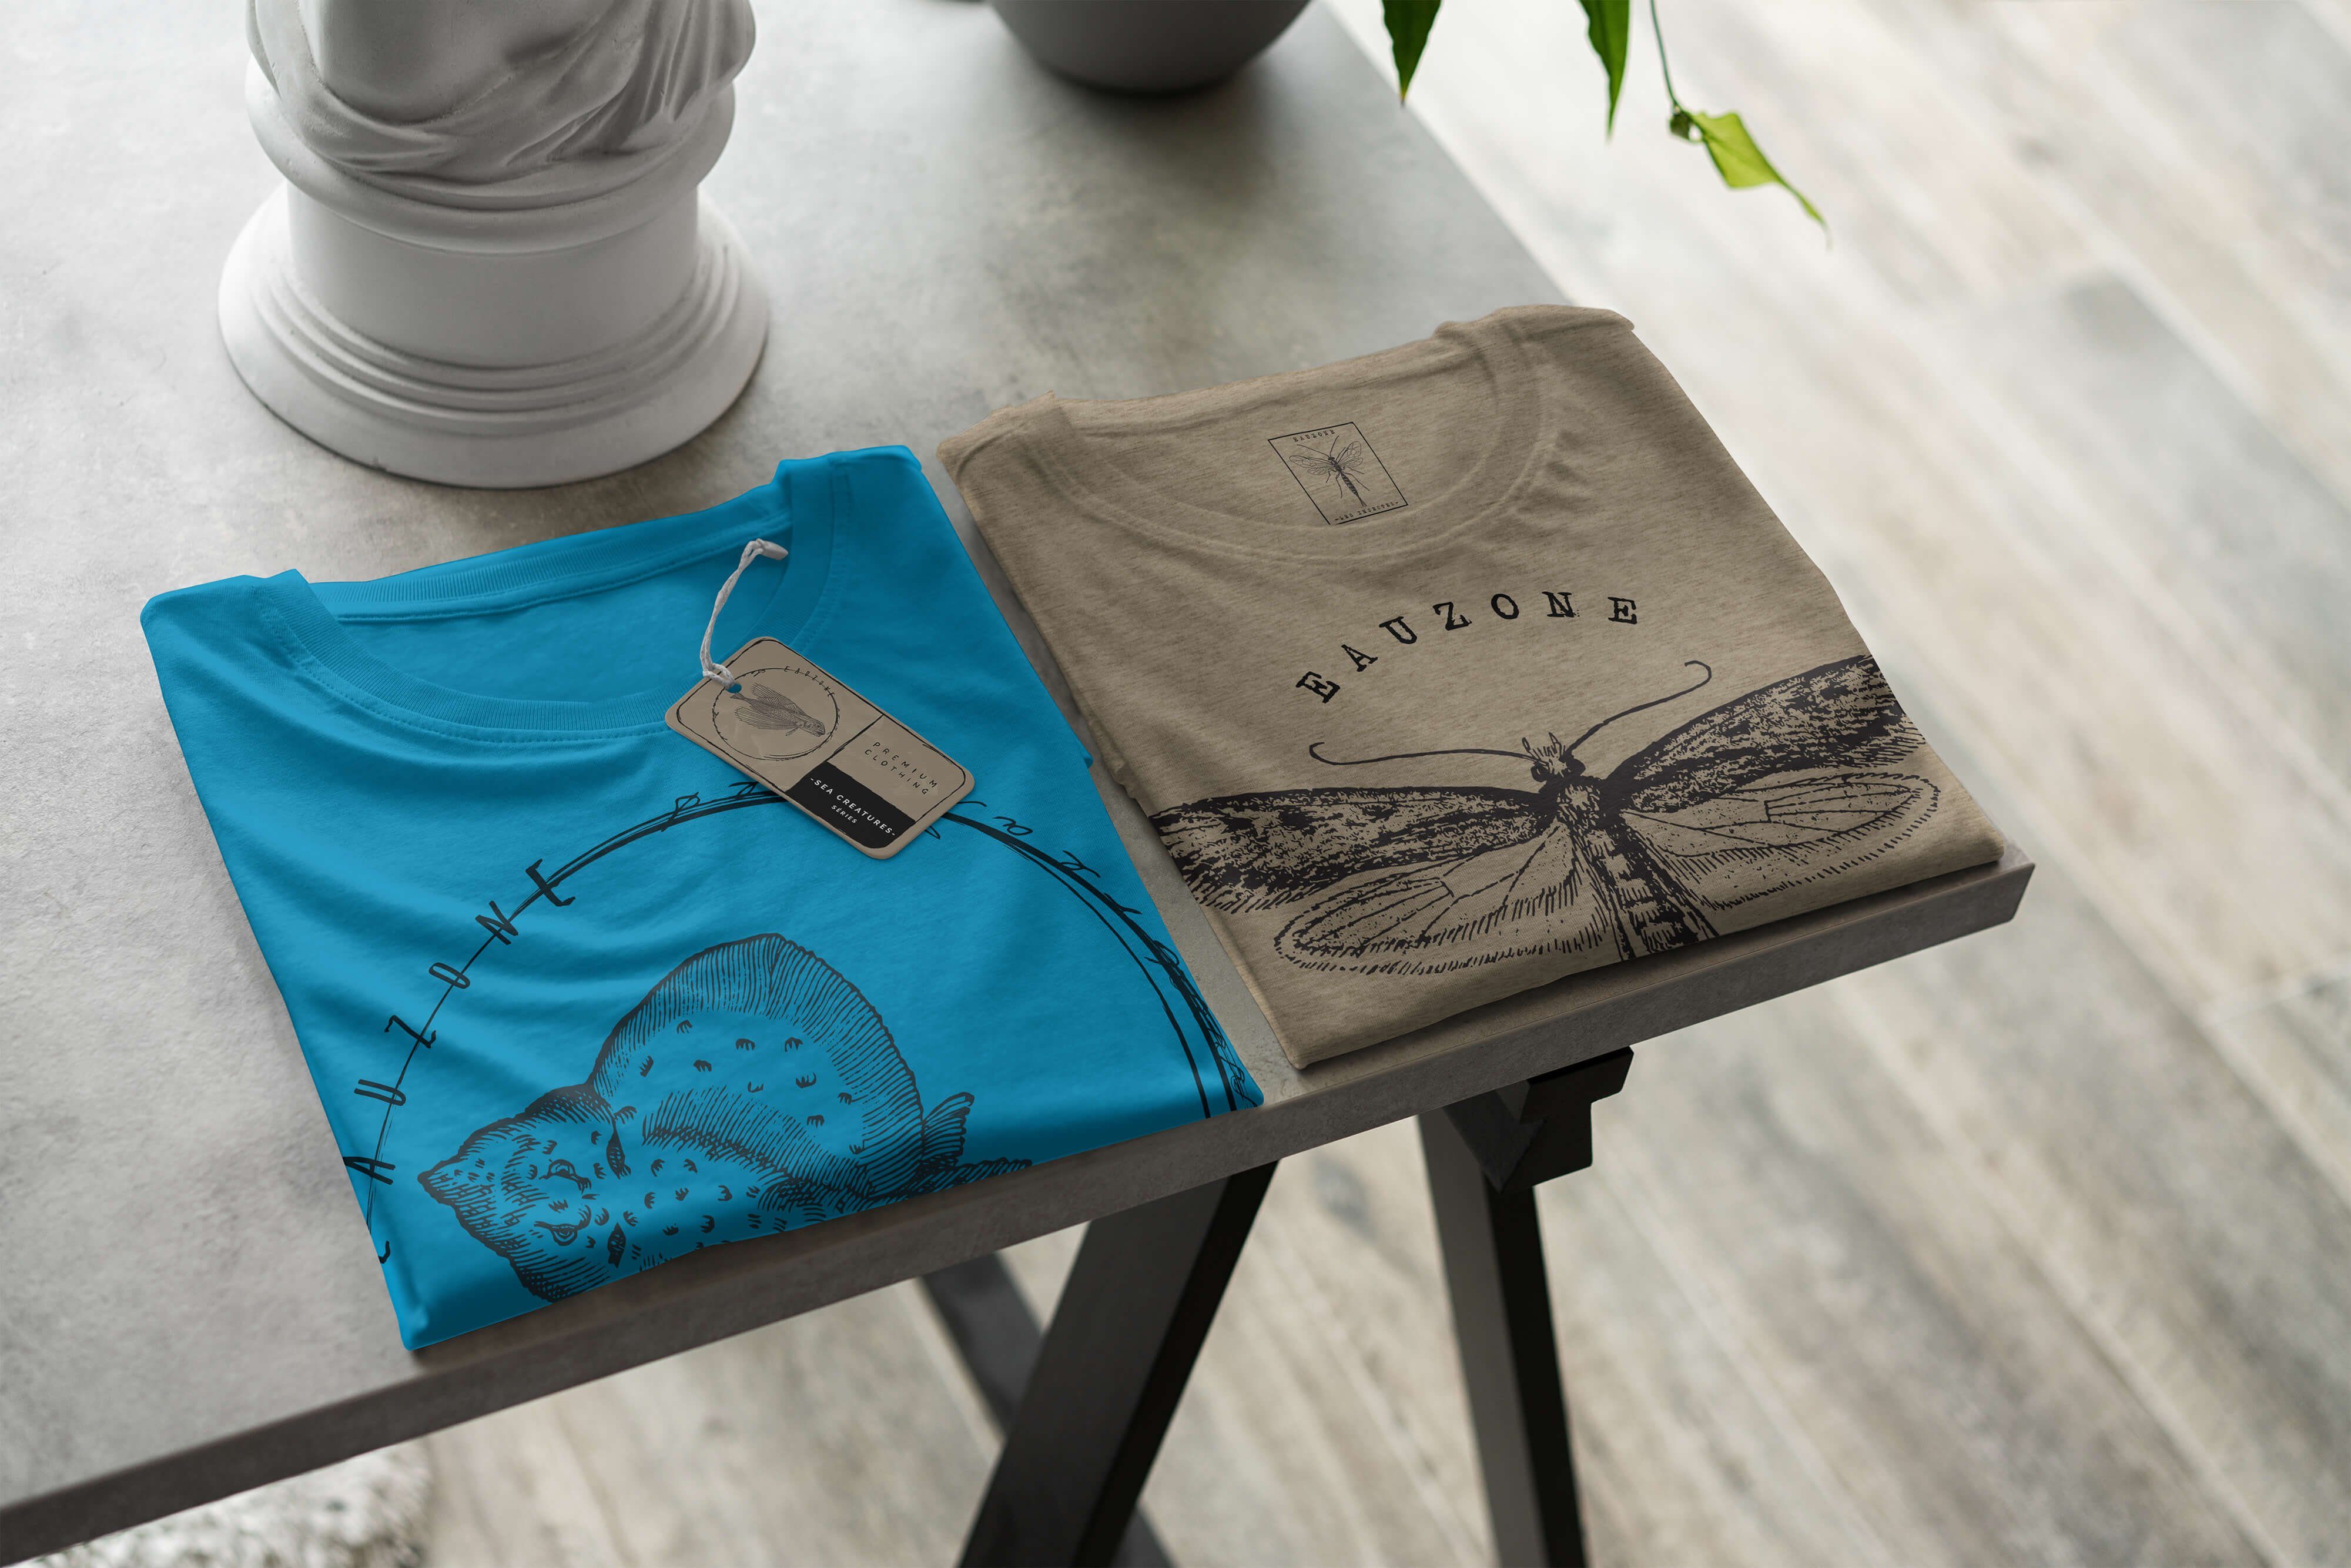 096 - Sinus Sea Sea Fische Struktur T-Shirt Schnitt feine T-Shirt / Creatures, Atoll und Serie: Tiefsee Art sportlicher